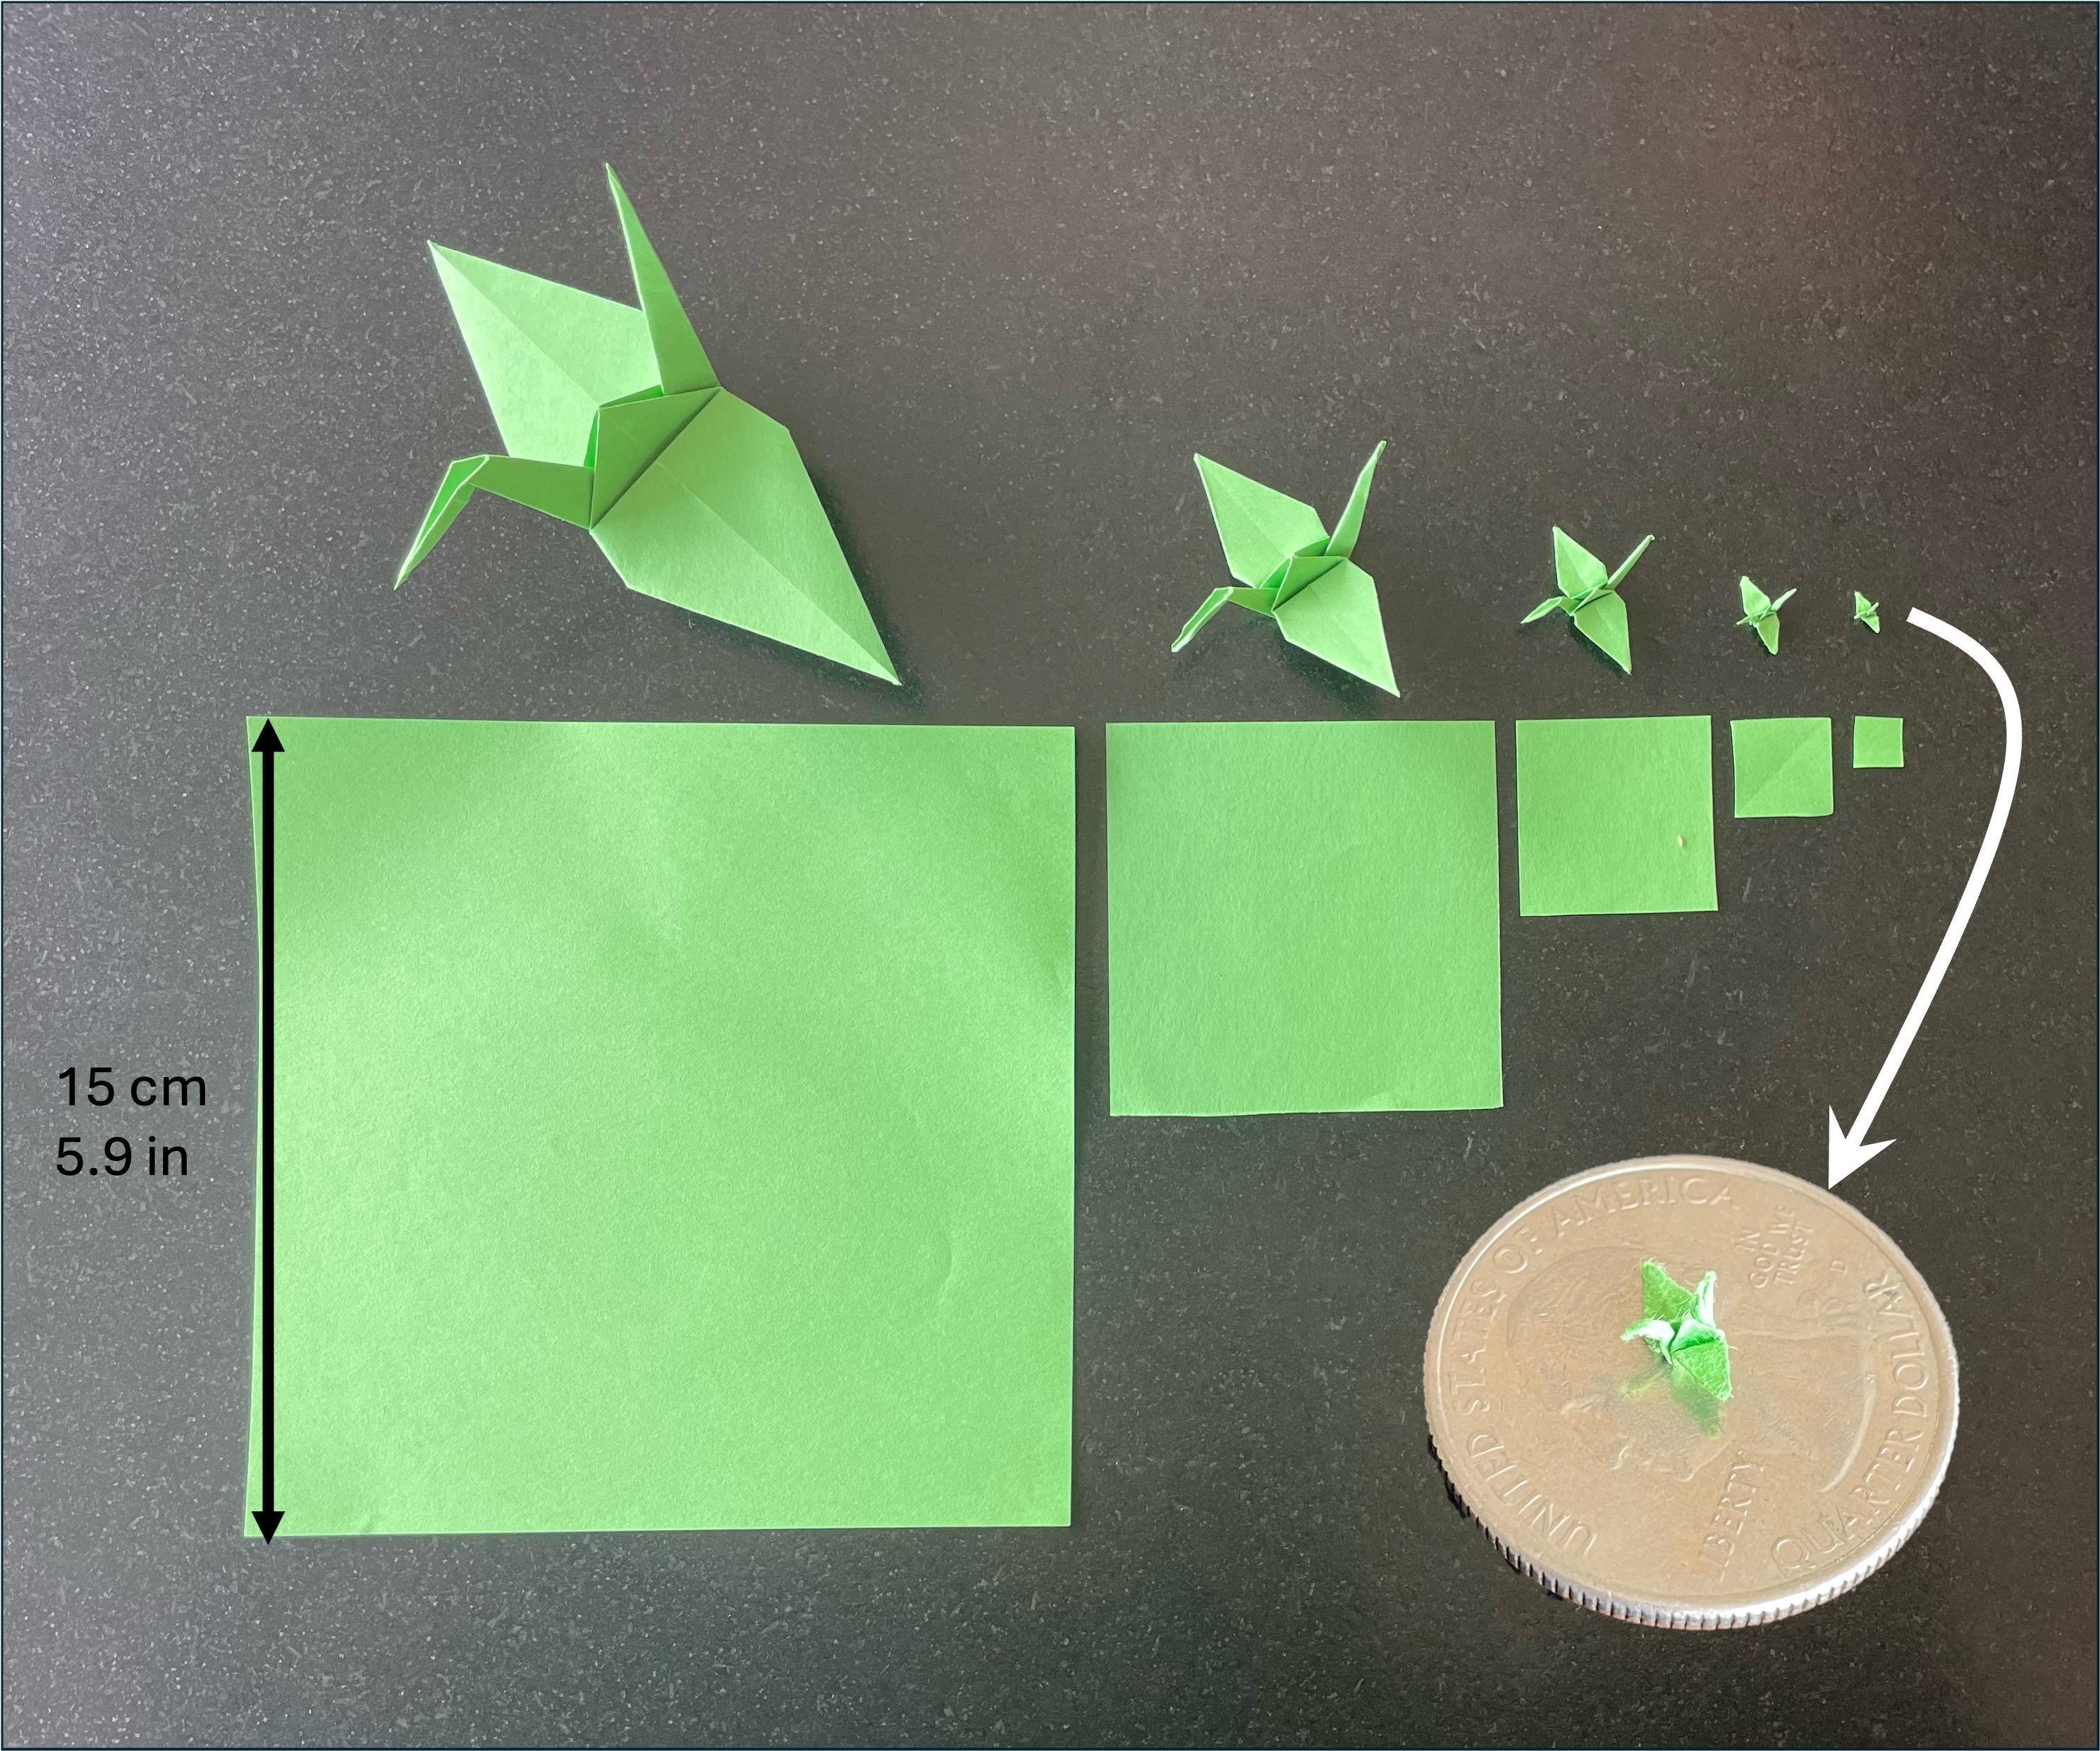 Miniaturizing Origami Paper Cranes